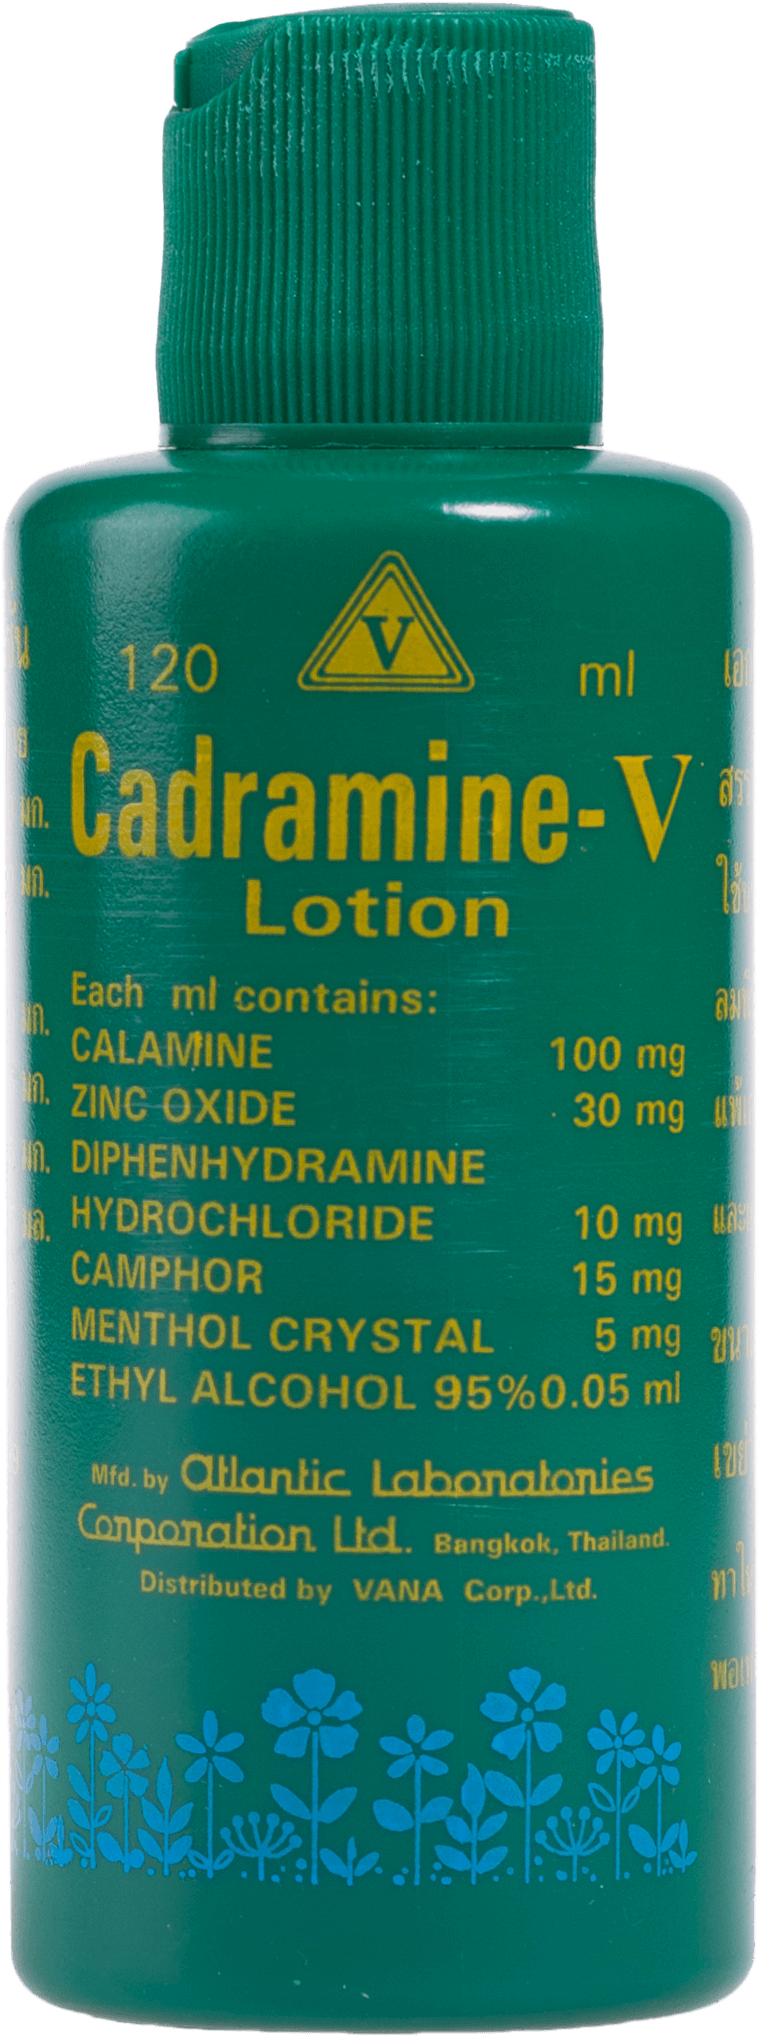 ยาทาแก้ผื่นคัน Cadramine-V 120 cc.